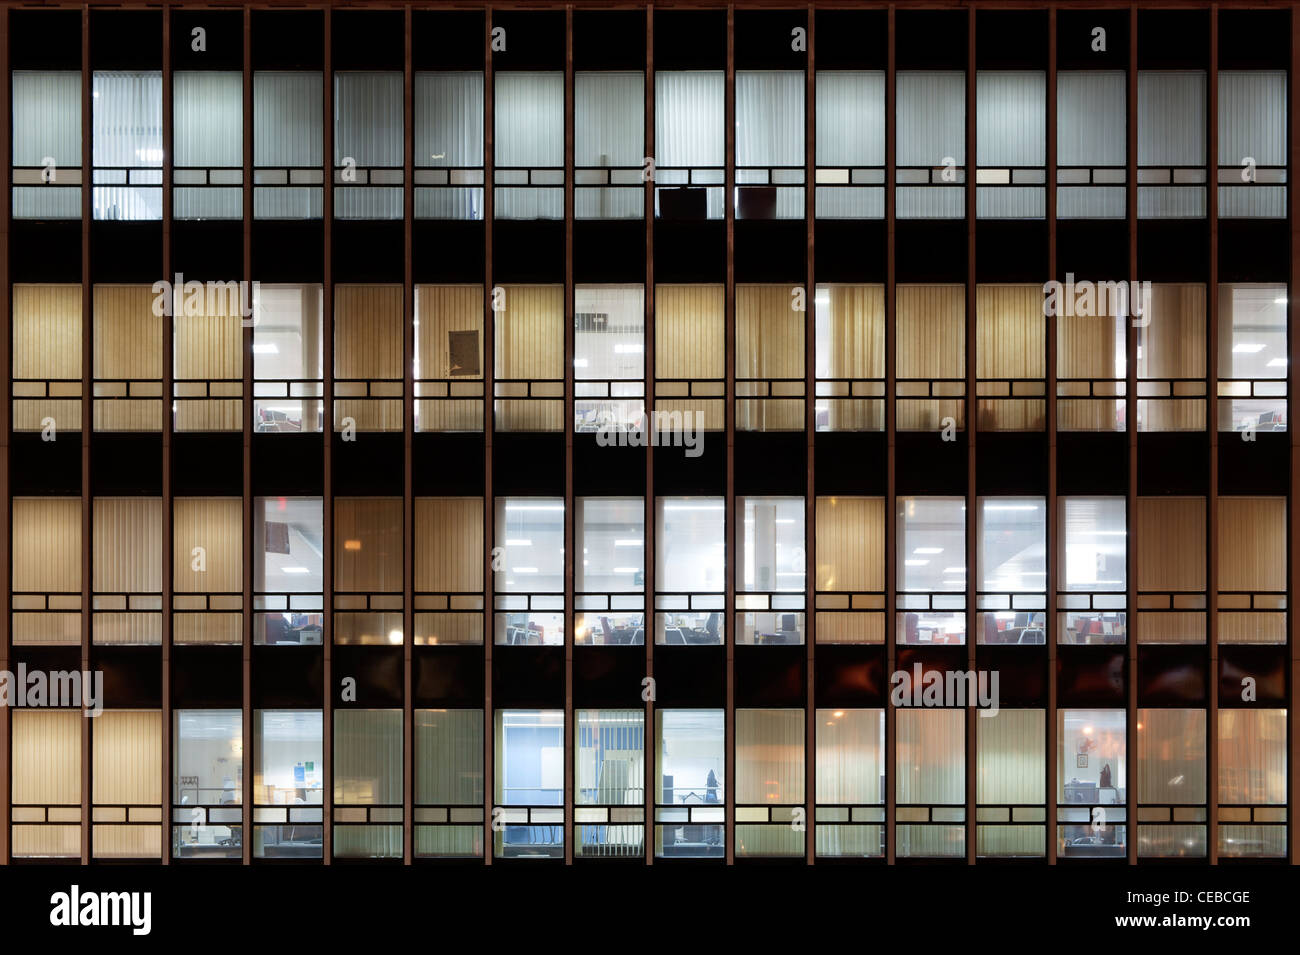 La grille de la CEI windows bureaux tour situé sur Miller Street, Manchester, prises de nuit. Banque D'Images